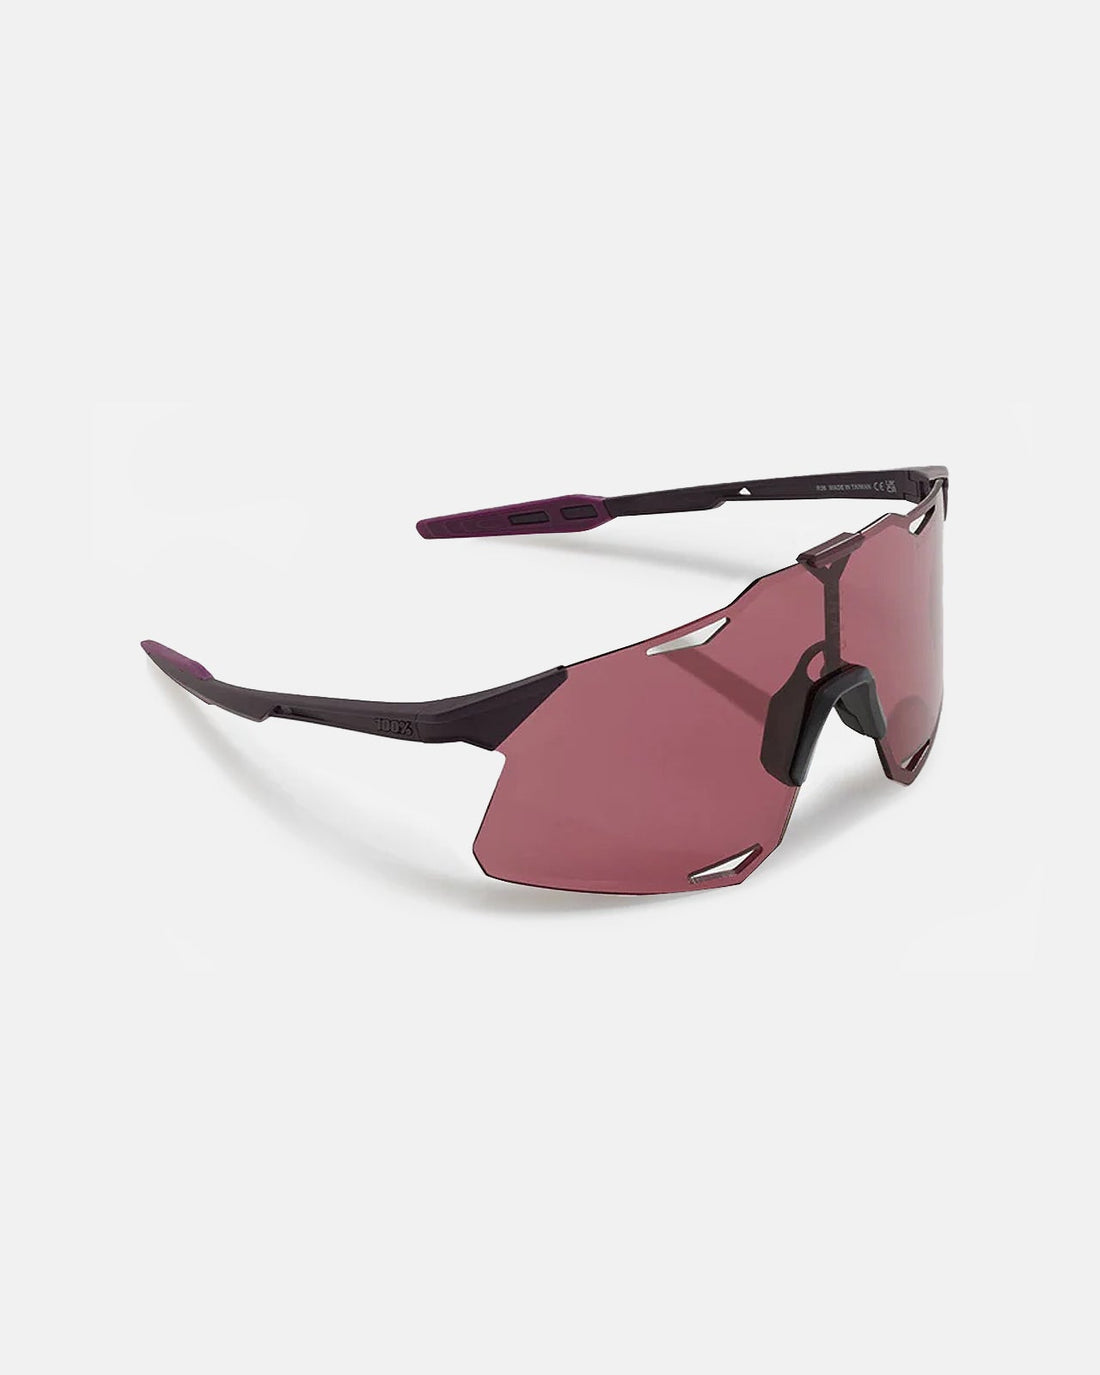 MAAP x 100% Hypercraft Sunglasses - Deep Purple - MAAP